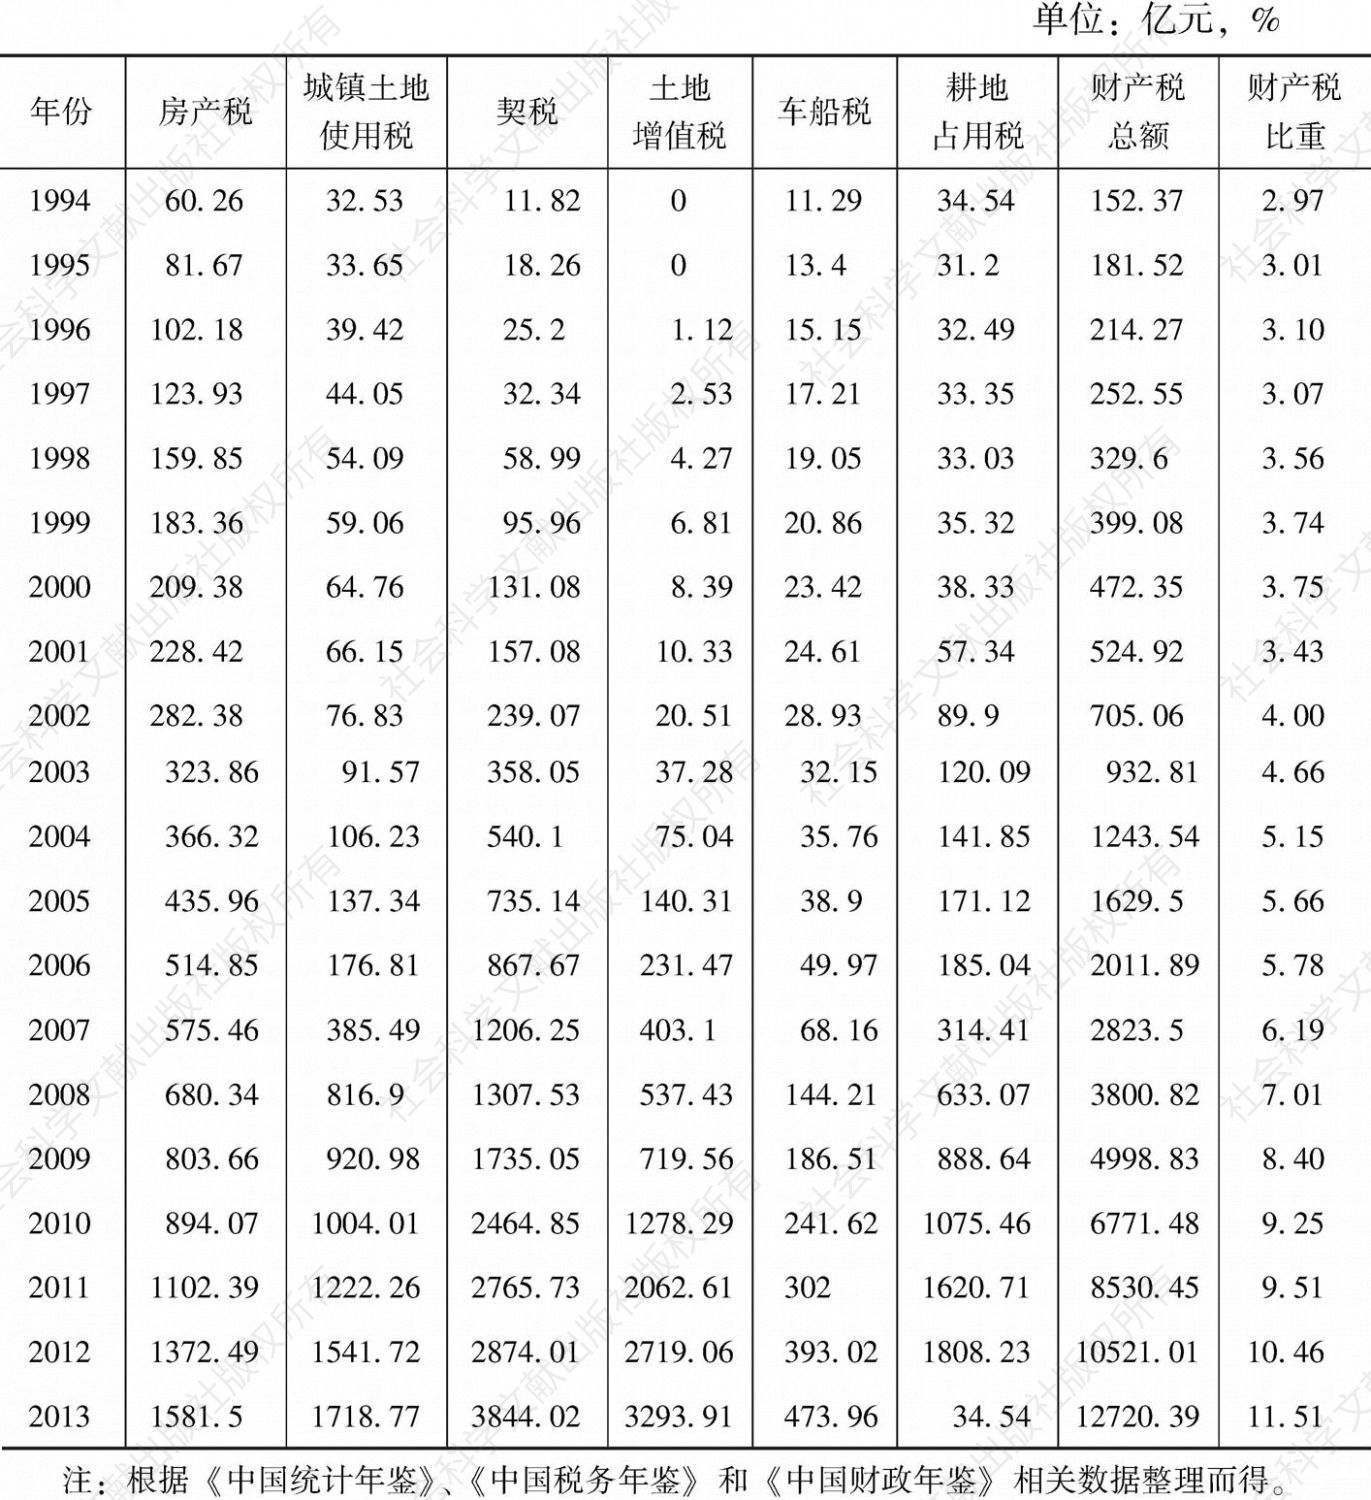 表7-1 1994～2013年财产税基本情况